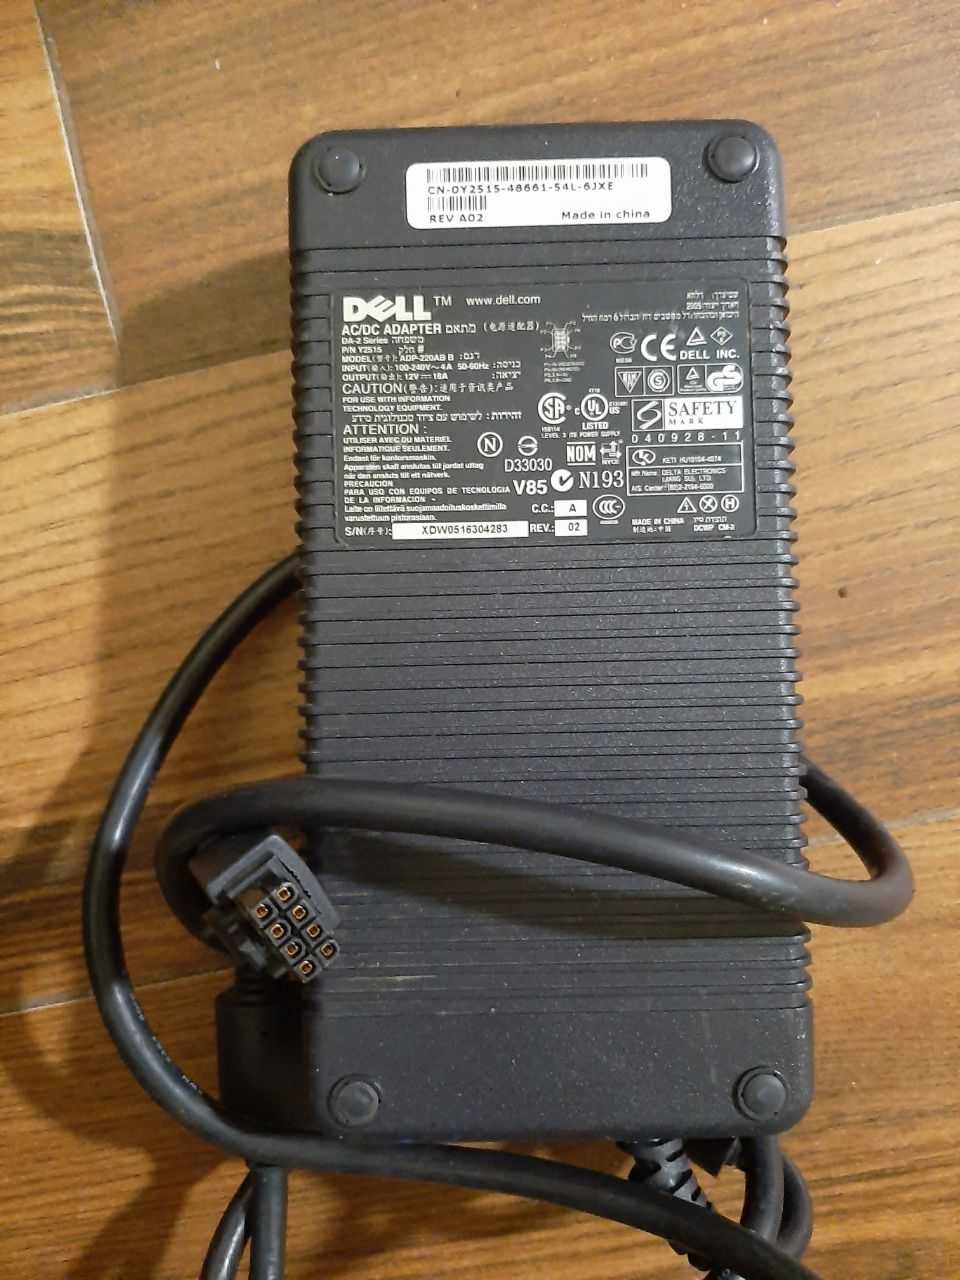 Блок питания Dell DA-2 Series D220P-01, 12V -18A